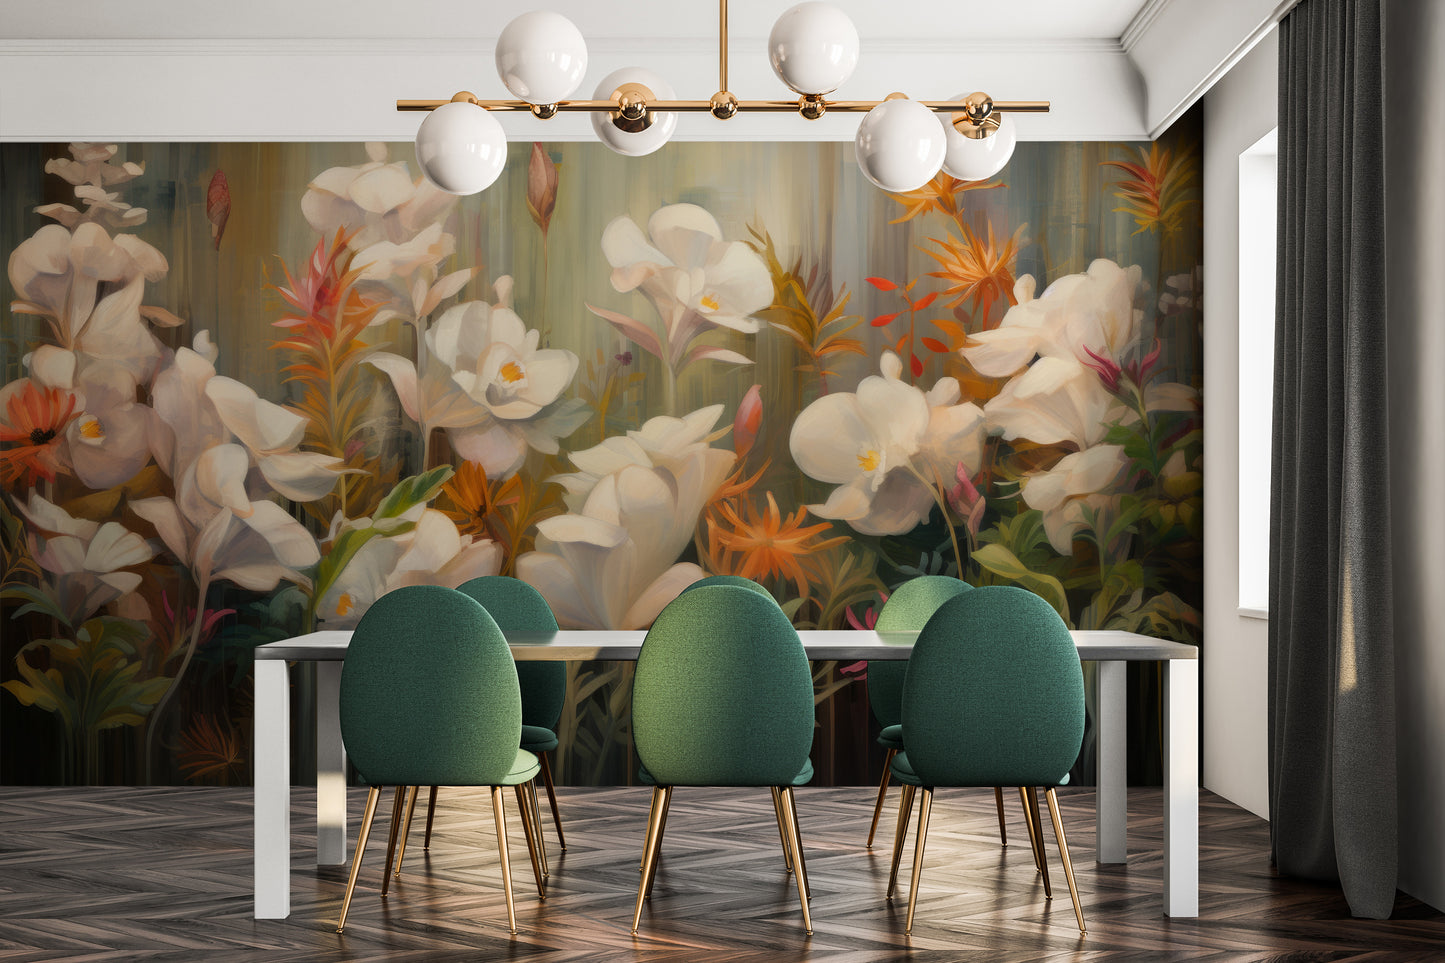 Wzór fototapety artystycznej o nazwie Rainforest Orchid Delight pokazanej w aranżacji wnętrza.